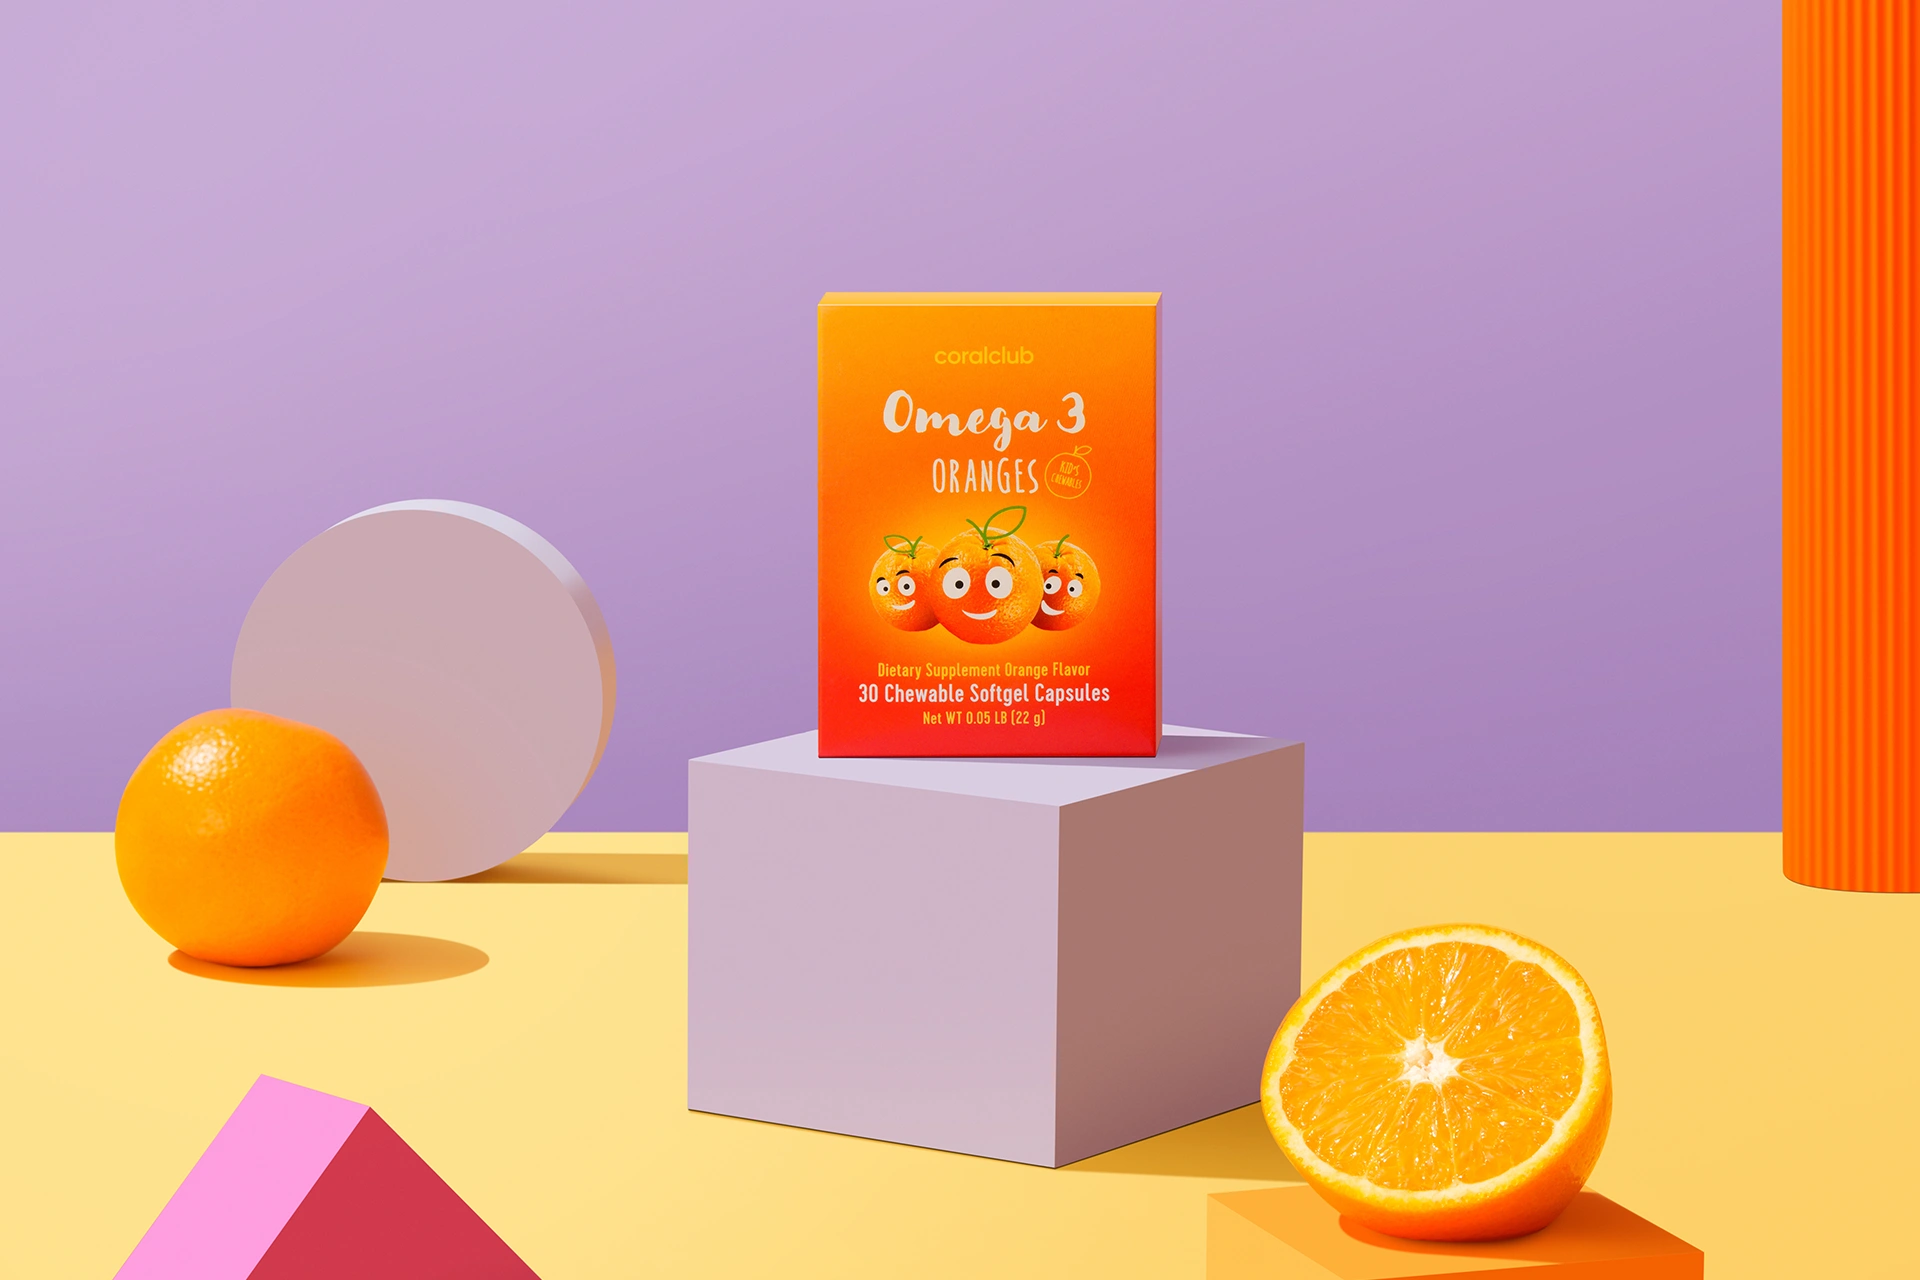 Omega 3 Orangen